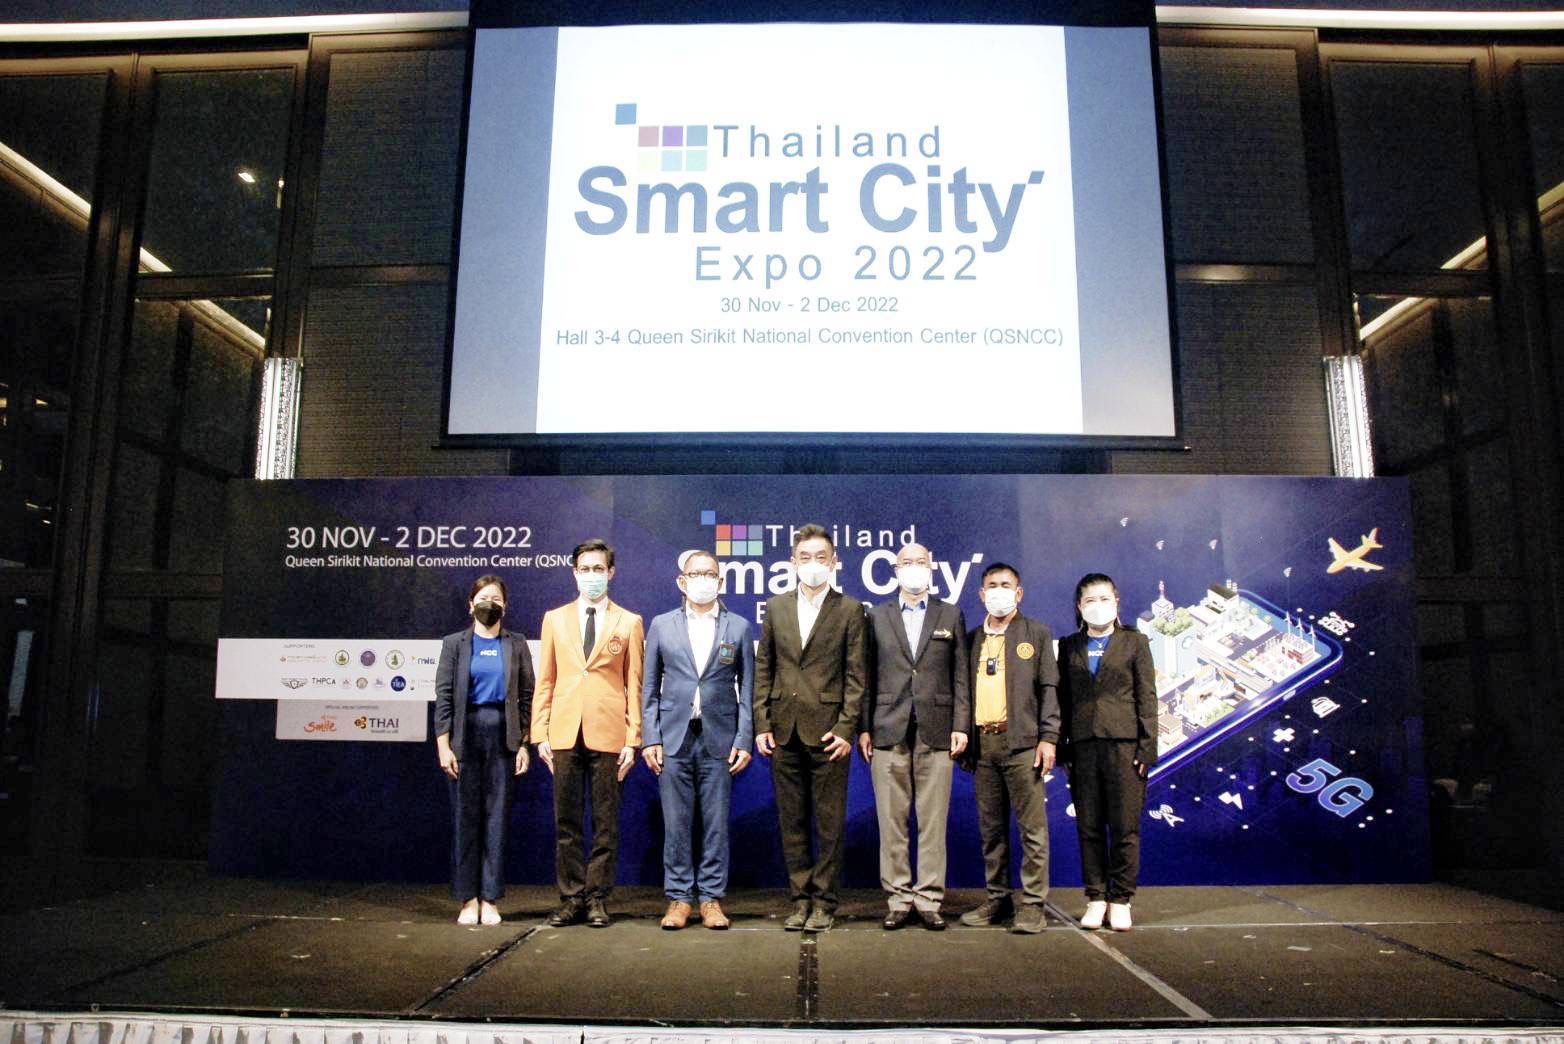 ดีป้า ร่วมกับ เอ็น.ซี.ซี. และเครือข่ายพันธมิตร จัดงาน Thailand Smart City Expo 2022 หนุนการขับเคลื่อนการพัฒนาเมืองอัจฉริยะ สู่การยกระดับคุณภาพชีวิตประชาชน